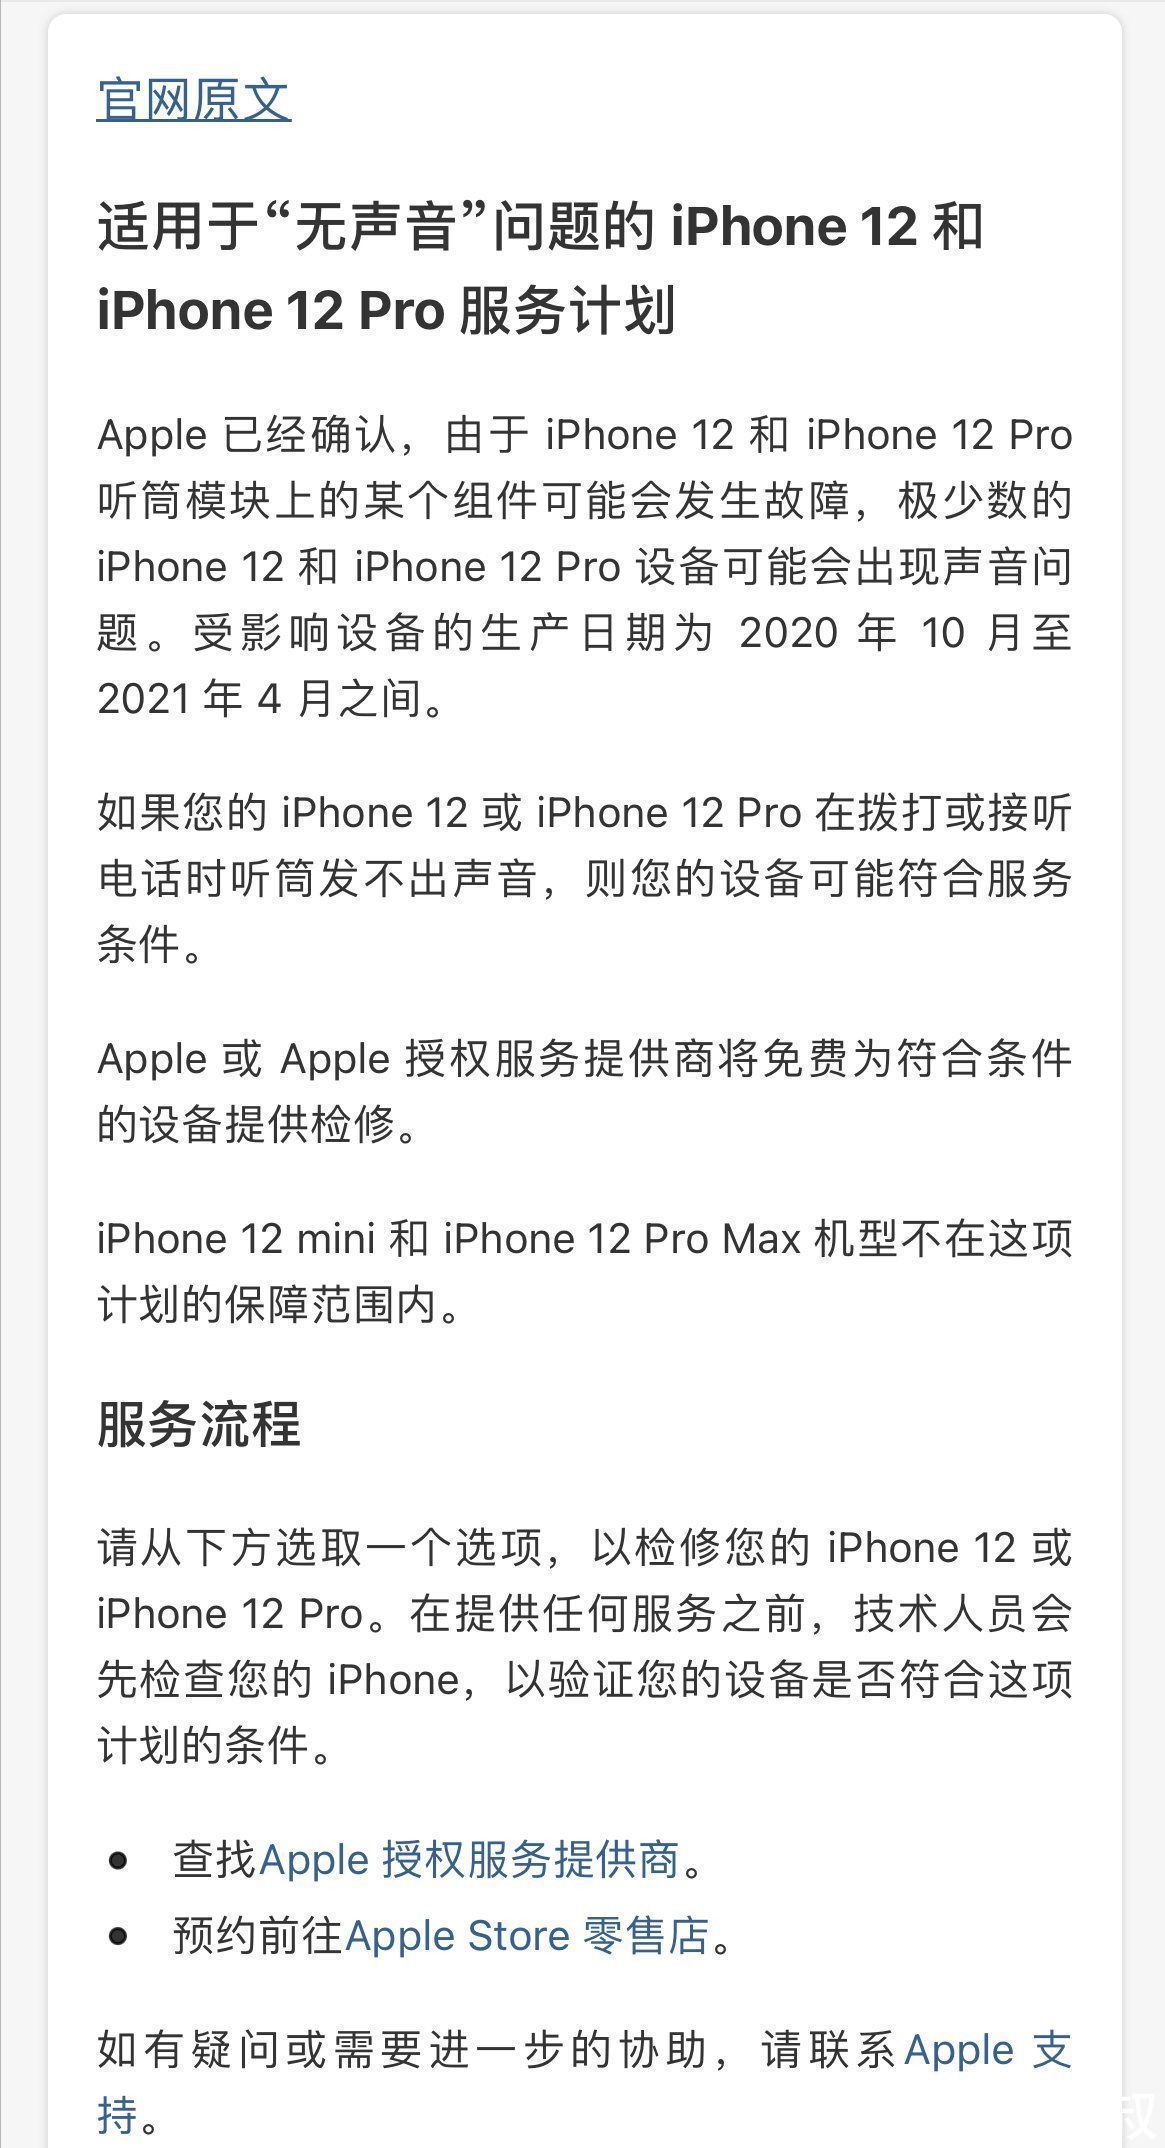 iPhone12|128G仅需4799元，iPhone12降2000元上热搜，建议先别买的三点原因